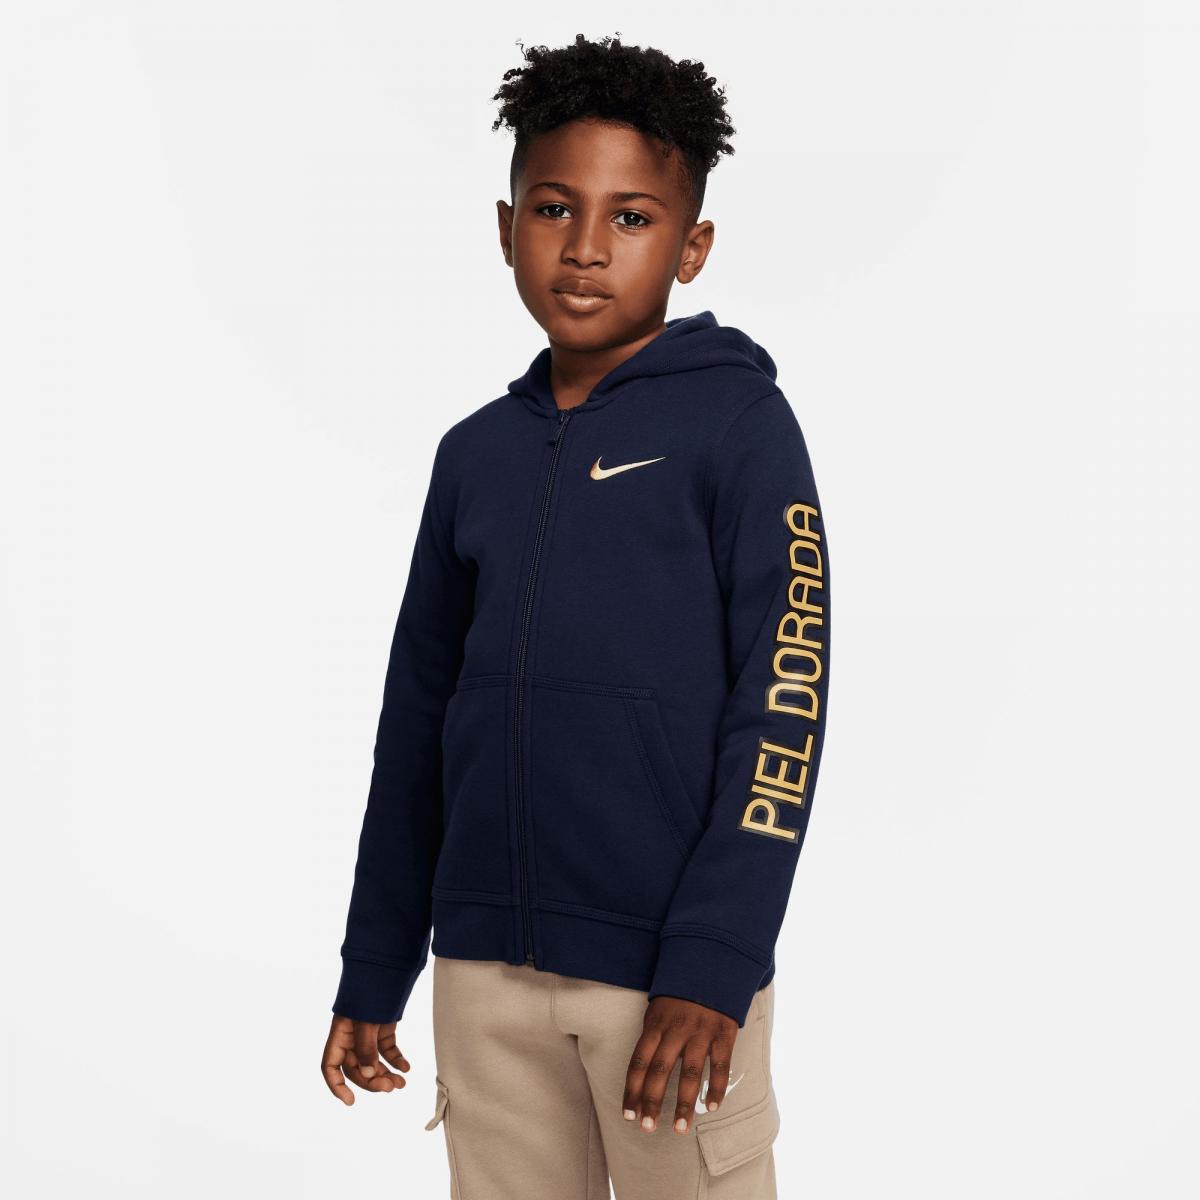 Sudadera con capucha Infantil Nike Pumas – Tienda Pumas